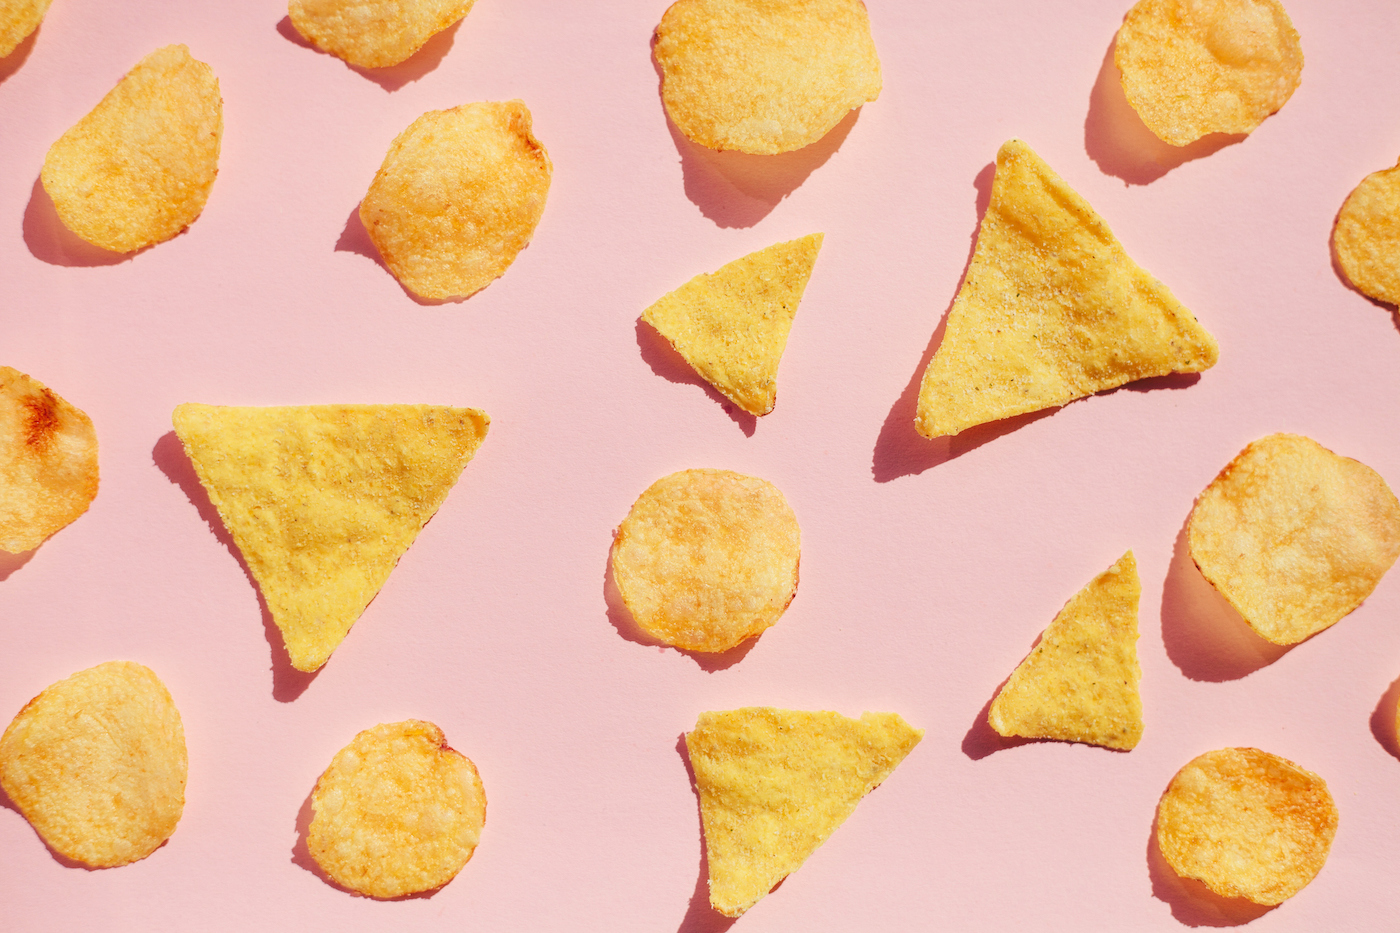 Картофельные чипсы на розовом фоне, жесткий свет с тенями.  Концепция нездоровой нездоровой пищи.